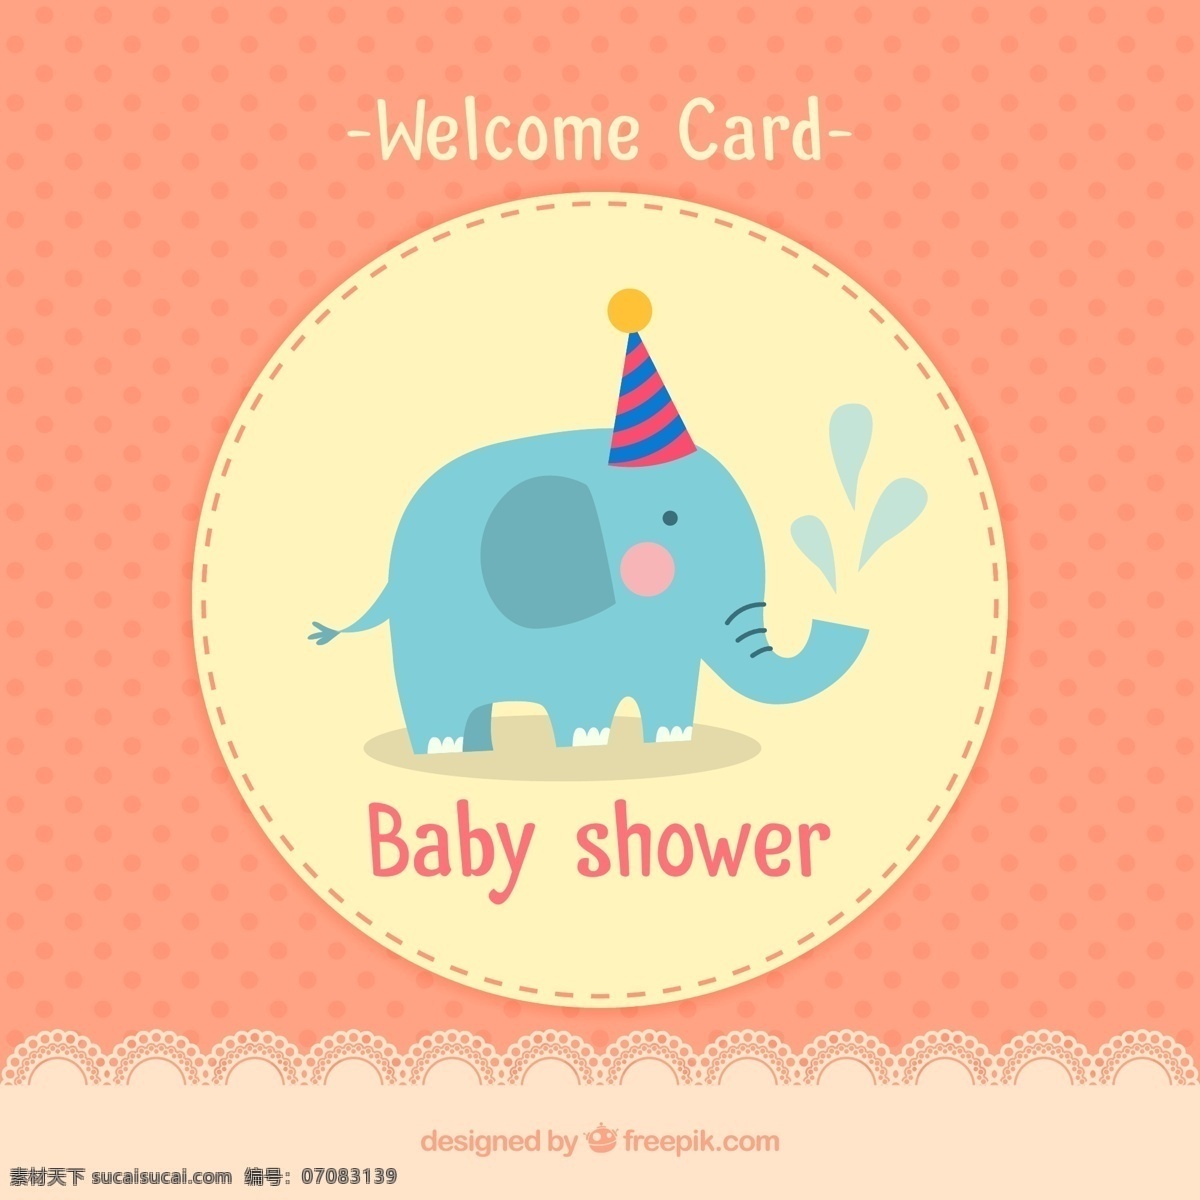 蓝色 大象 迎 婴 派对 卡片 矢量图 邀请卡 迎婴派对 水玉点 卡通 粉色